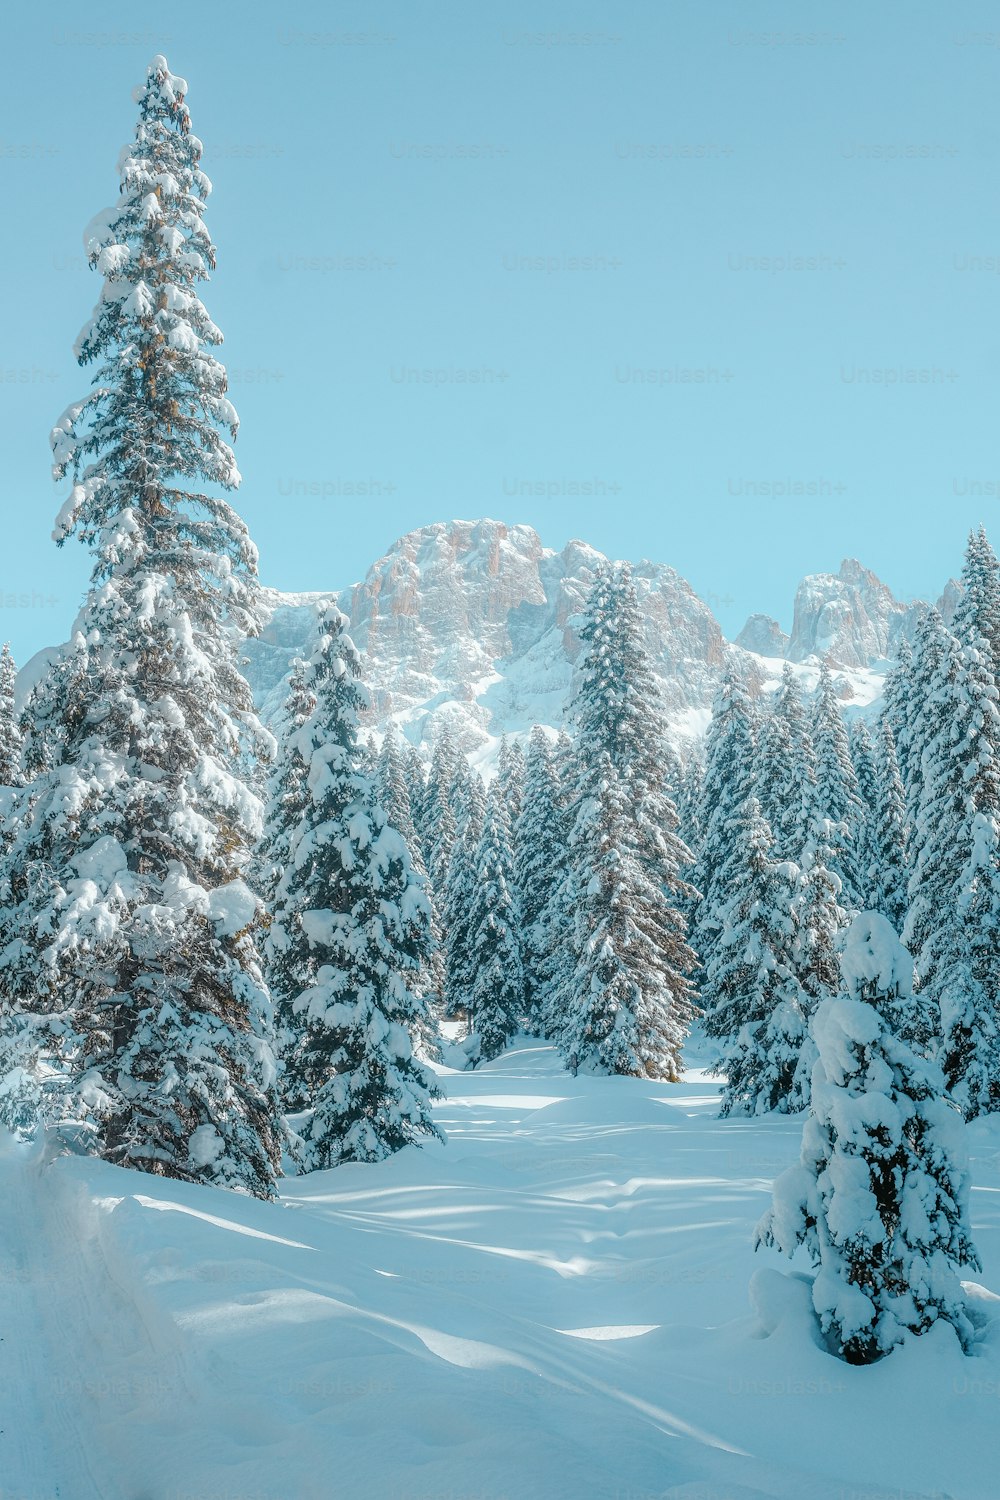 Eine verschneite Landschaft mit Bäumen und Bergen im Hintergrund